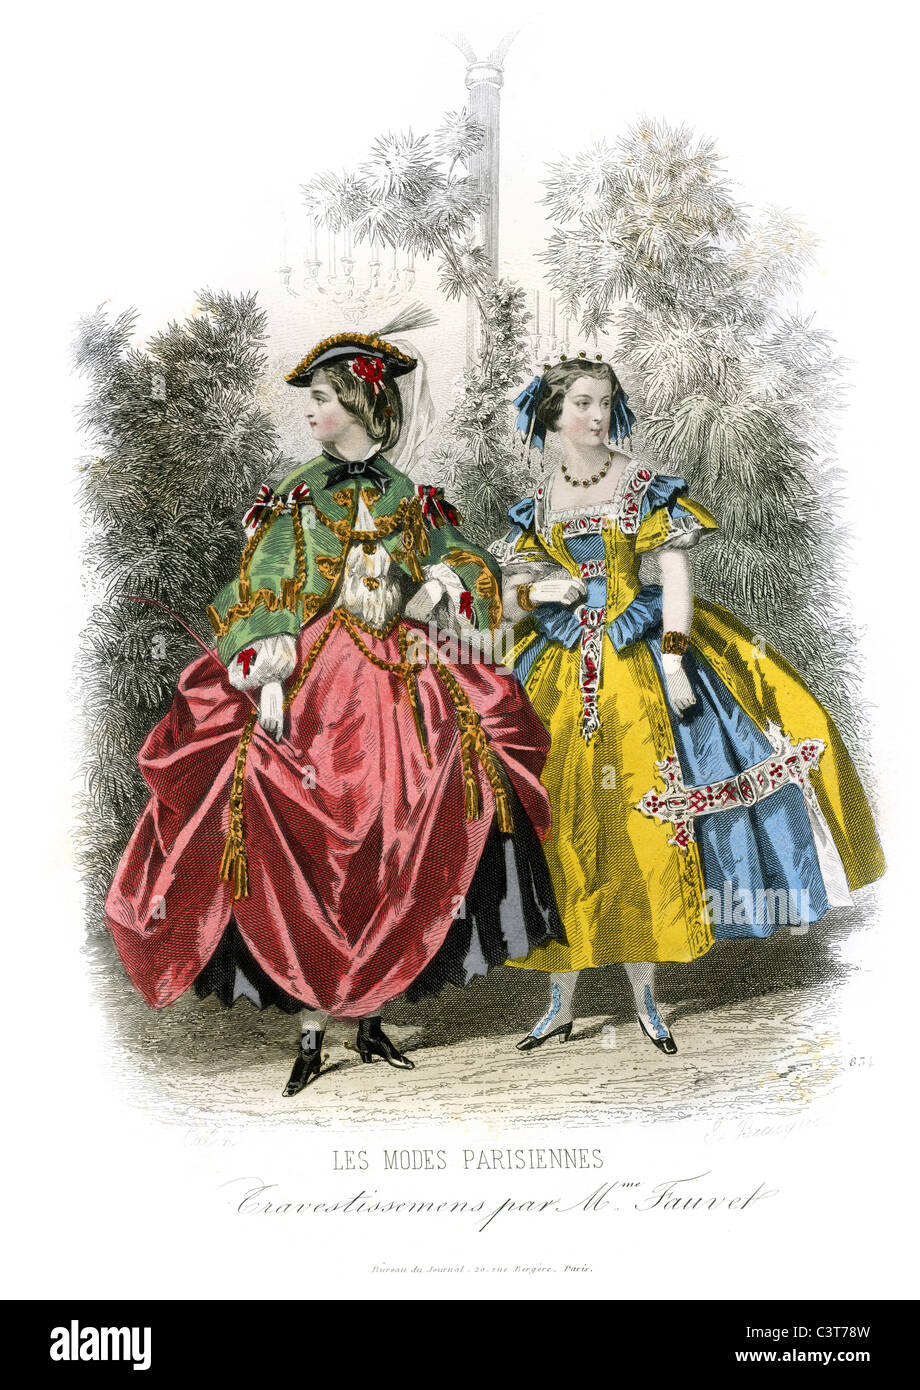 Dos jóvenes mujeres vistiendo trajes de moda de París, Francia alrededor de 1860 Foto de stock